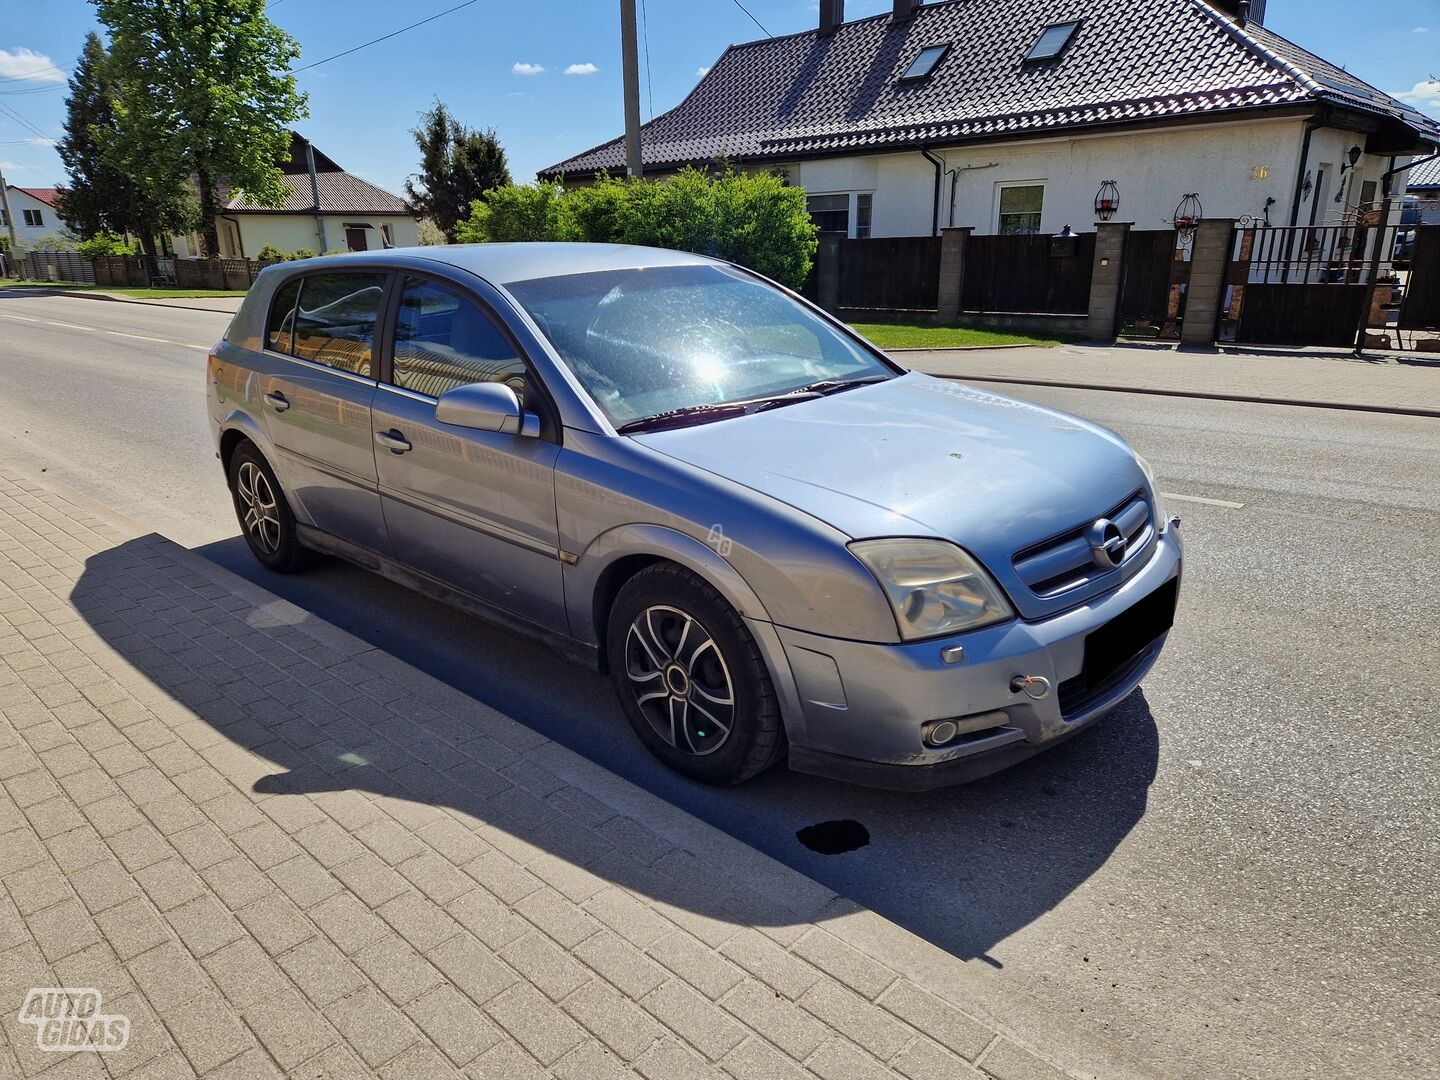 Opel Signum 2004 m dalys